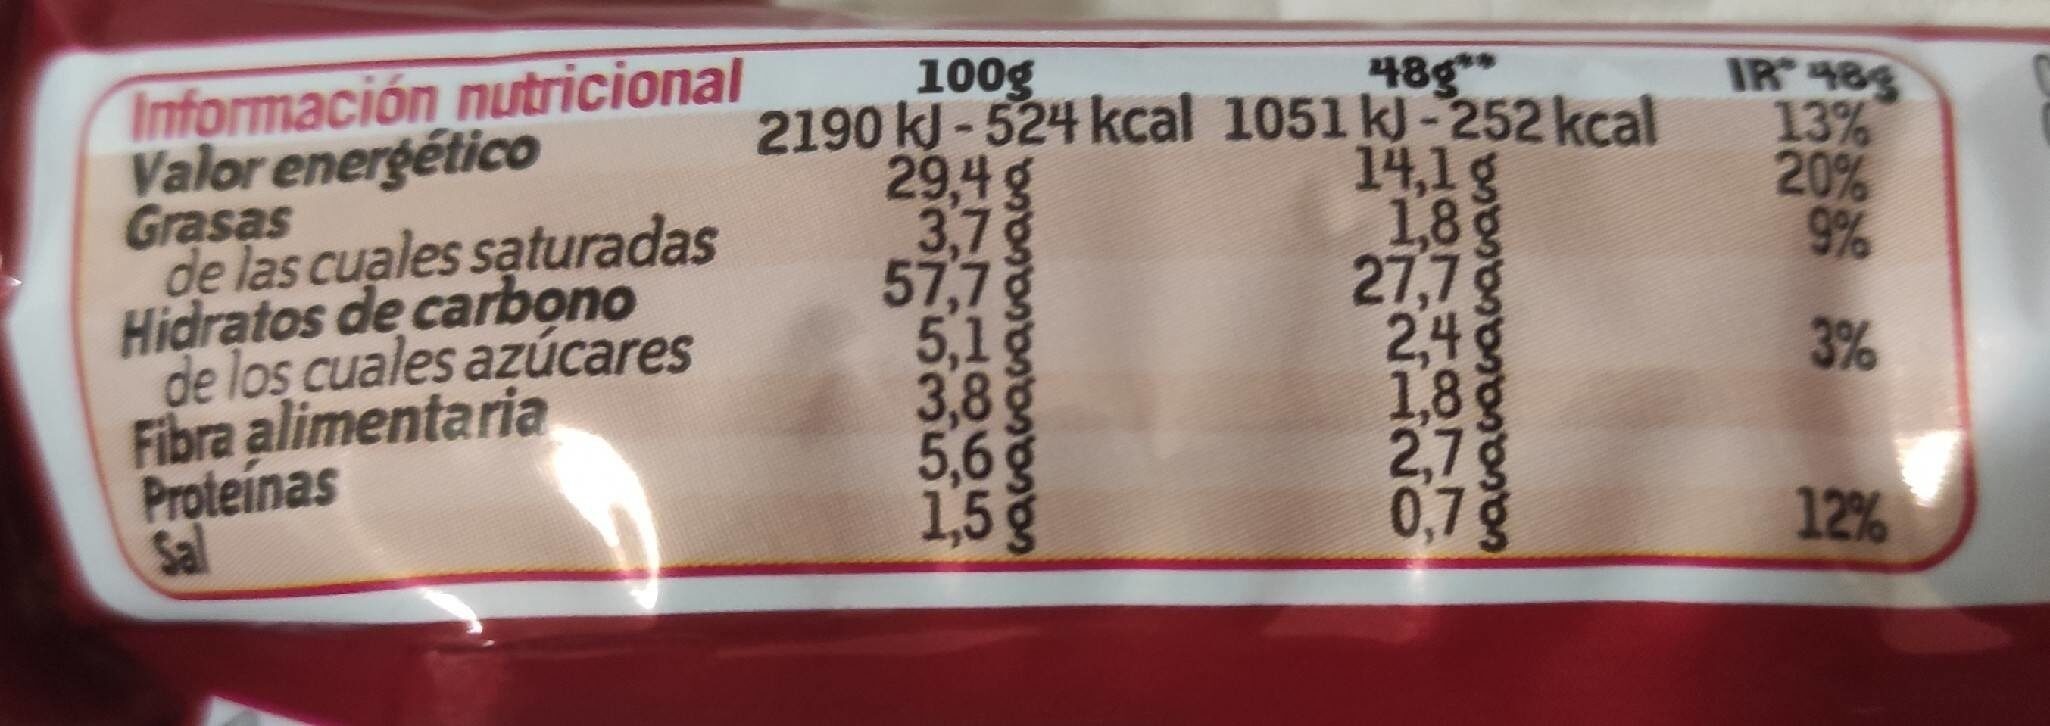 Doritos Bits Original - Nutrition facts - es